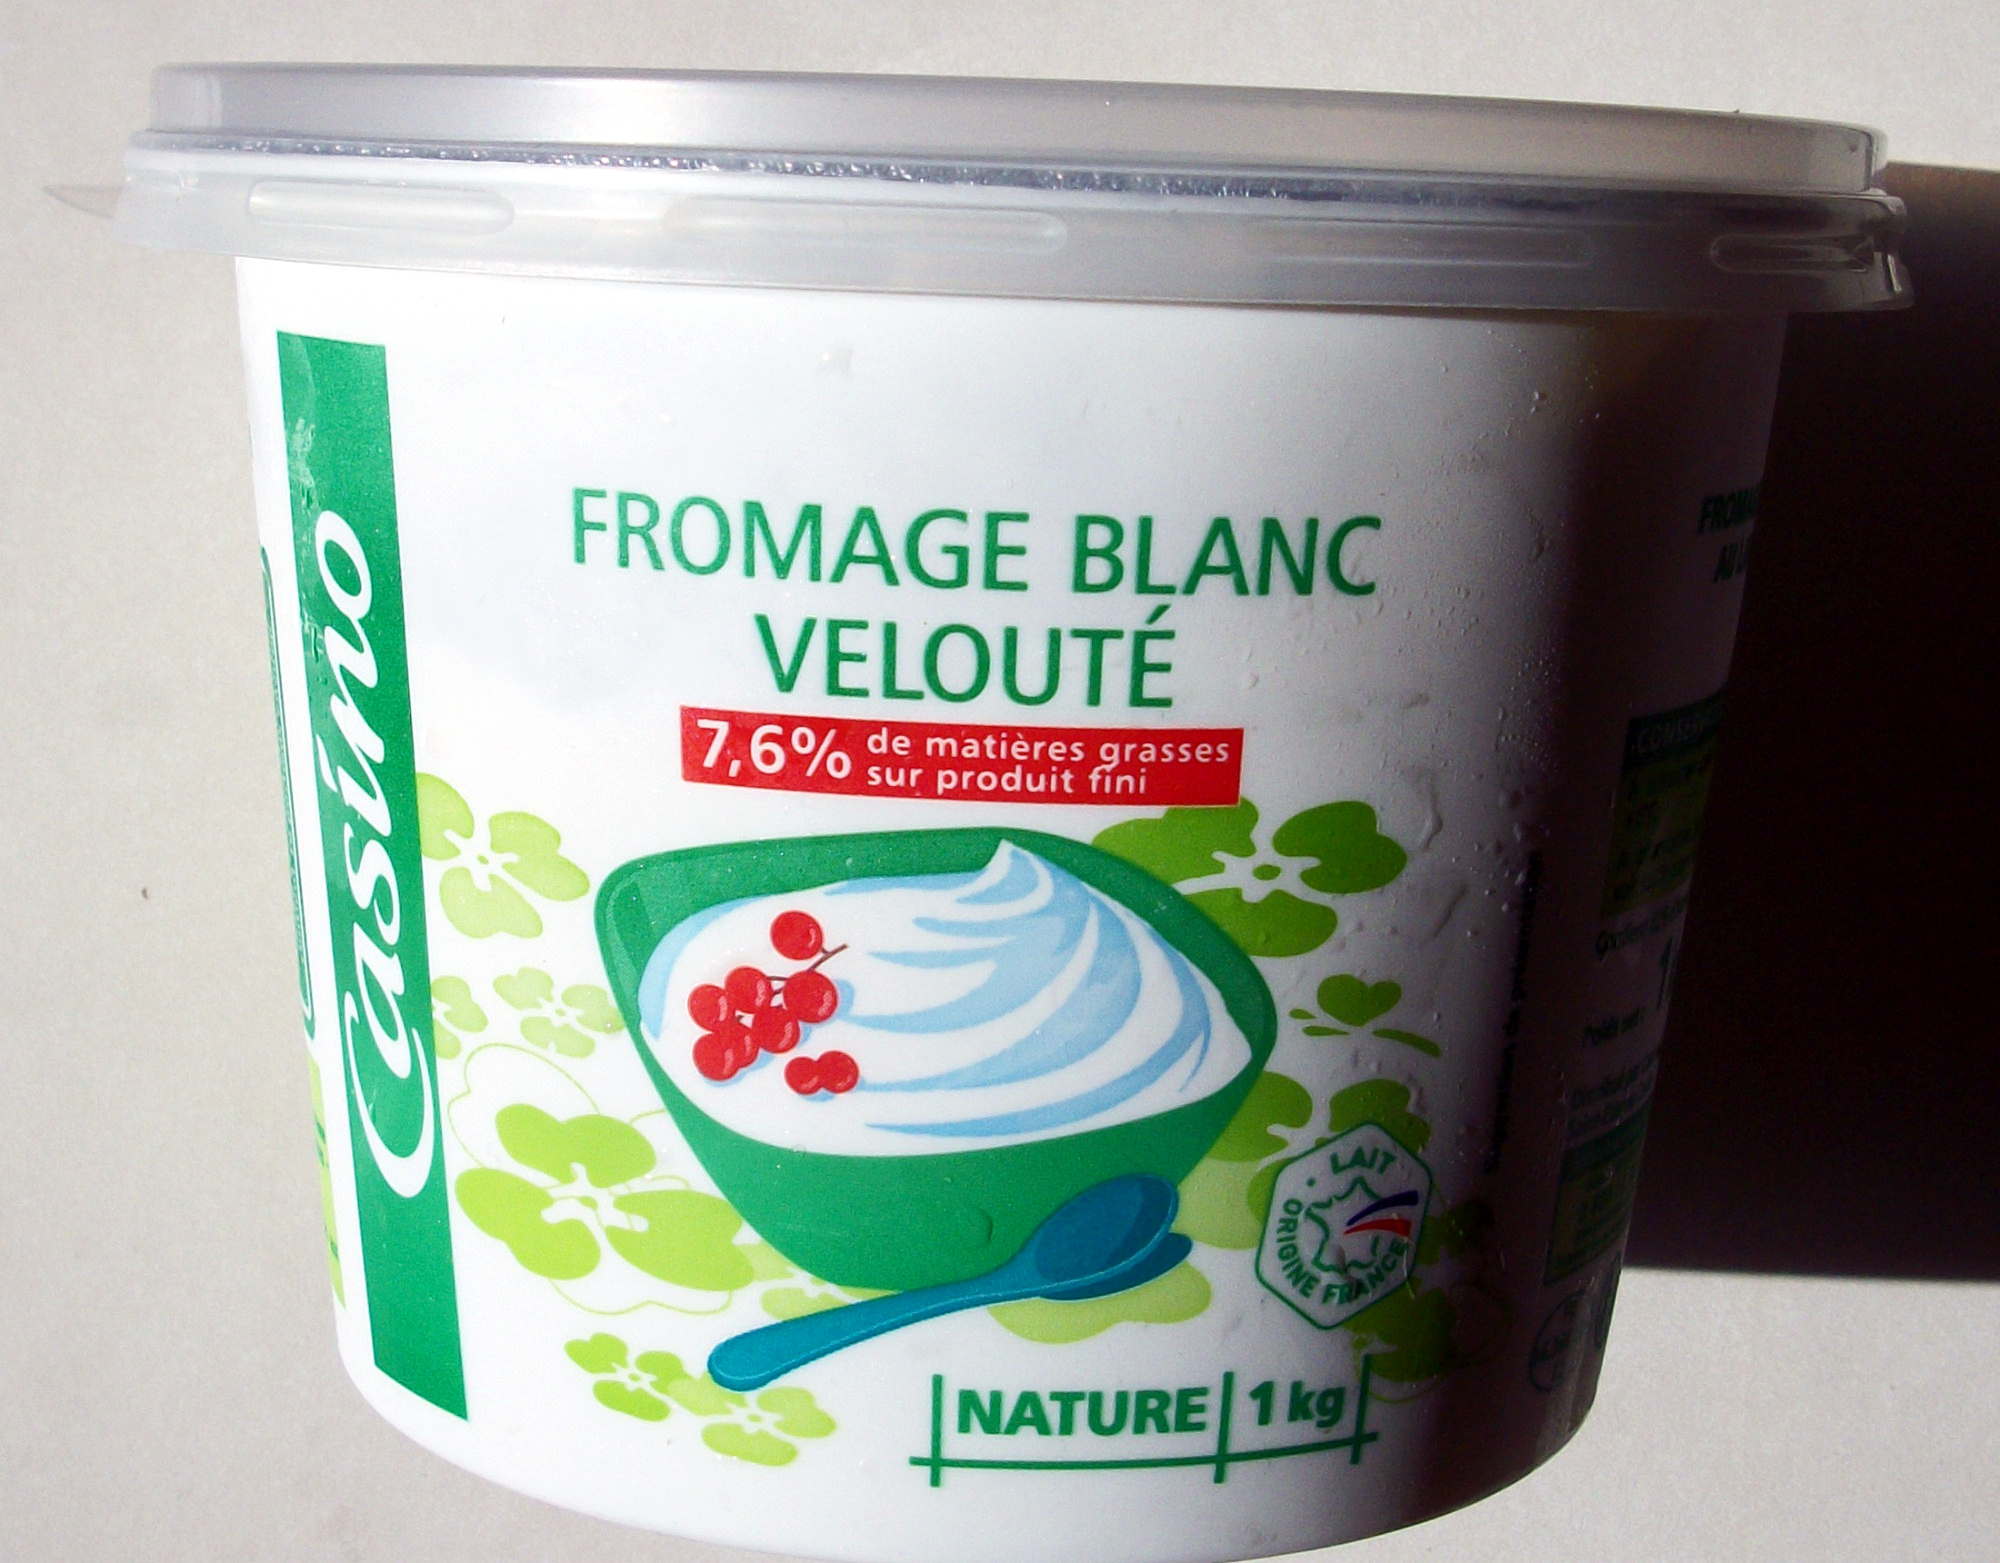 Fromage blanc velouté 7,6% de matières grasses sur produit fini - Product - fr